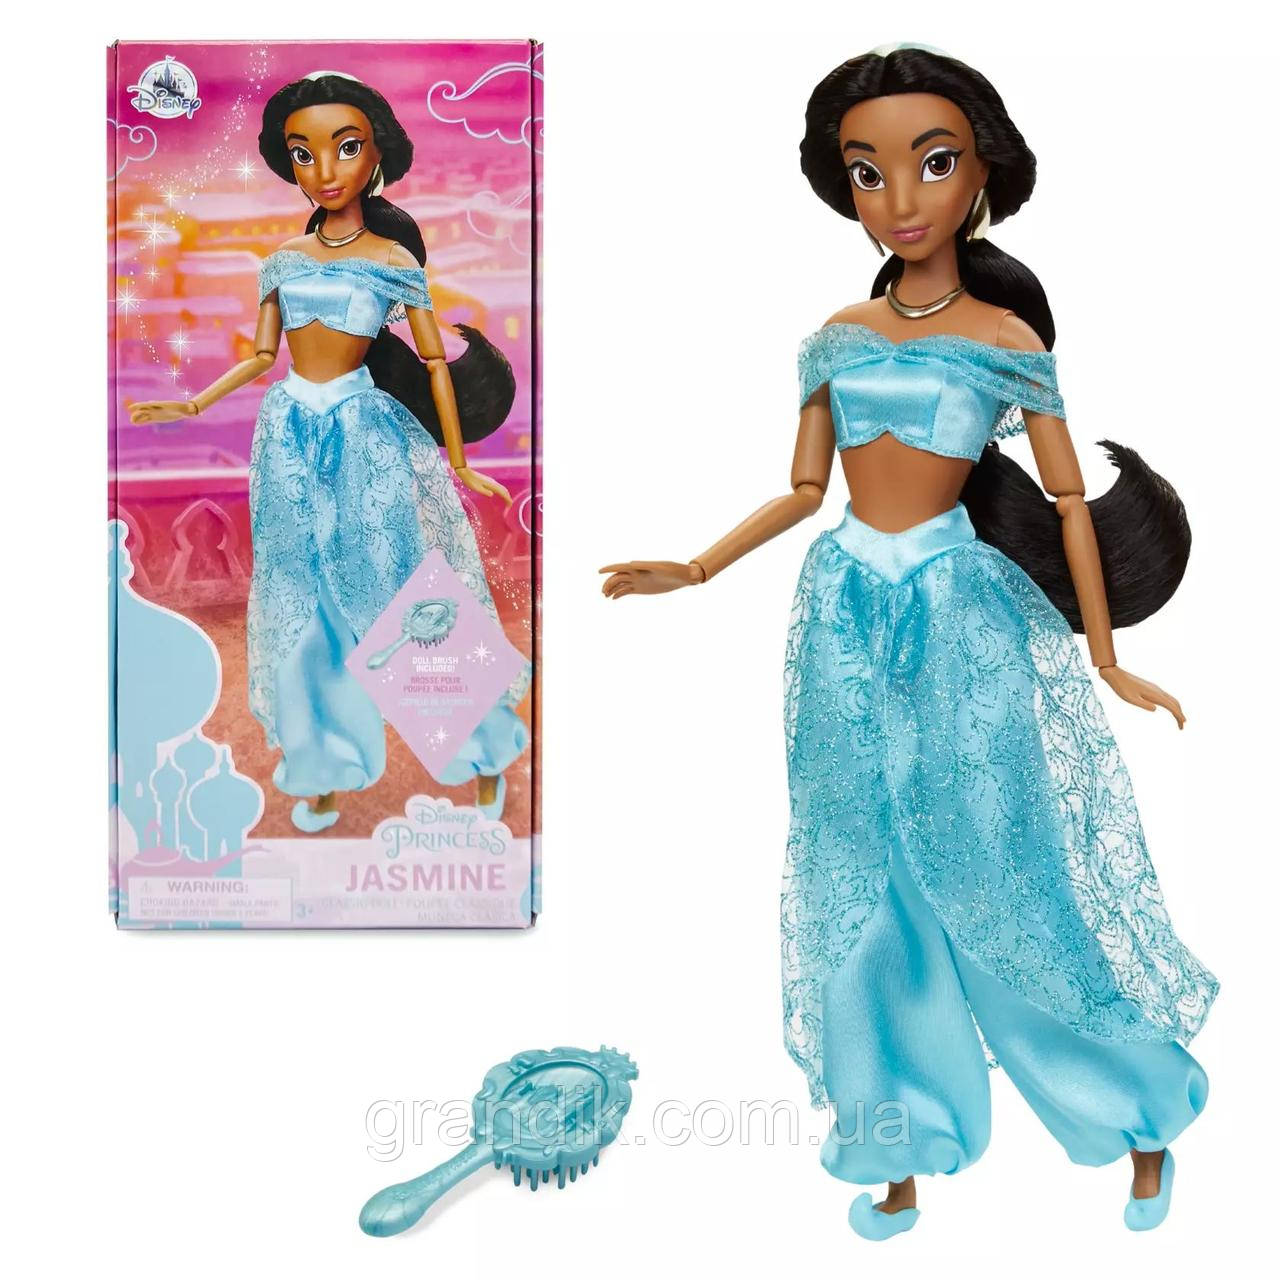 Класична лялька Жасмін, принцеса Дісней, оригінал, Jasmine Classic Doll – Aladdin